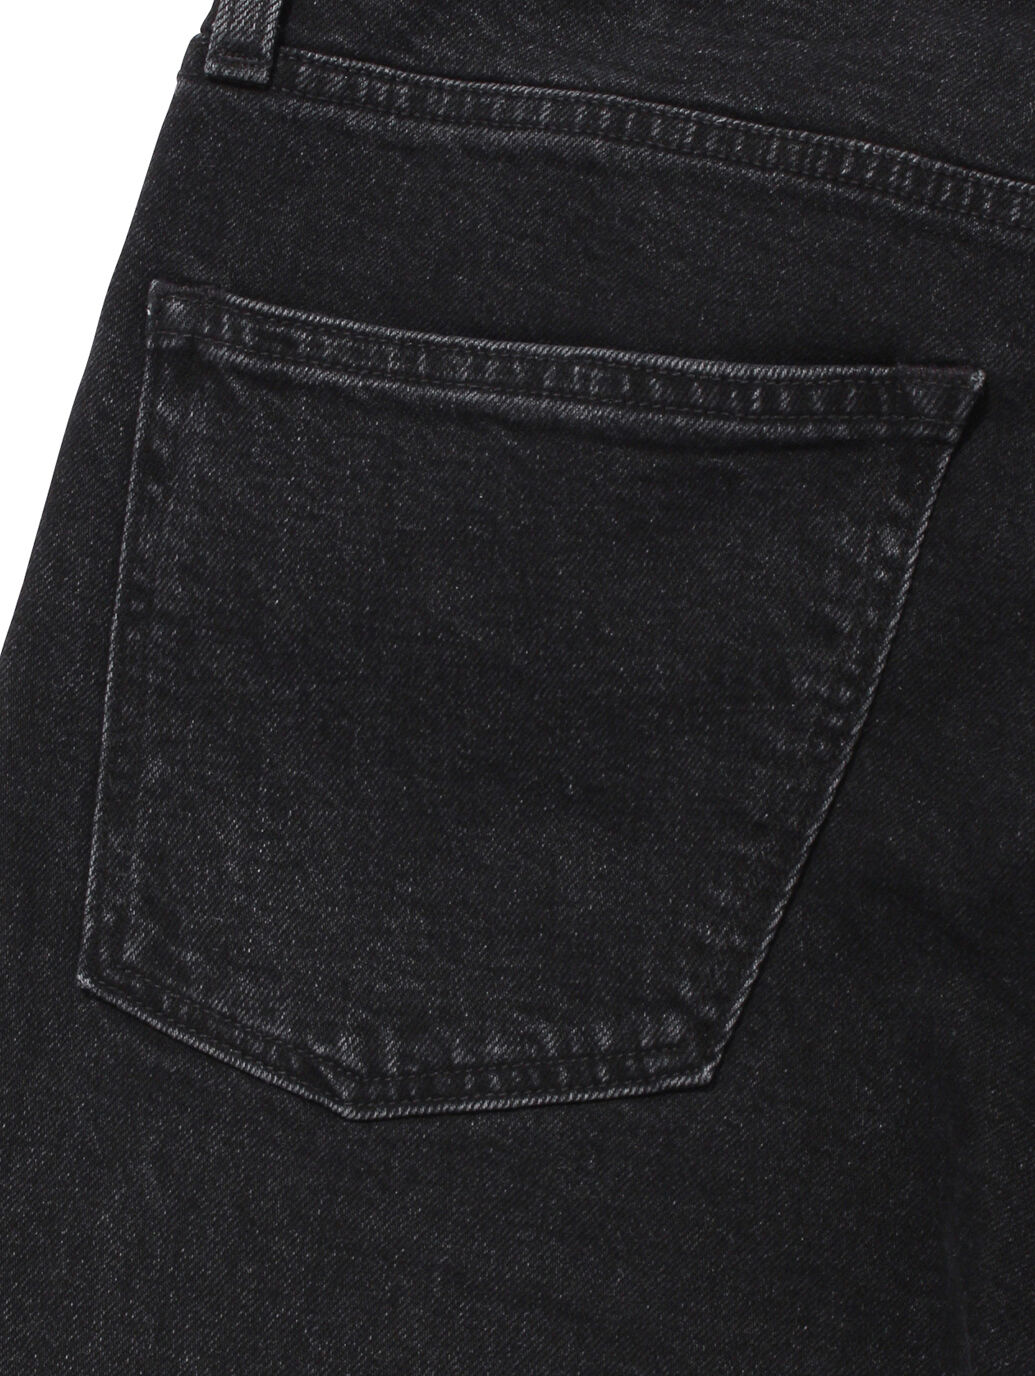 remake upside jeans "black dyed" LEVI’S